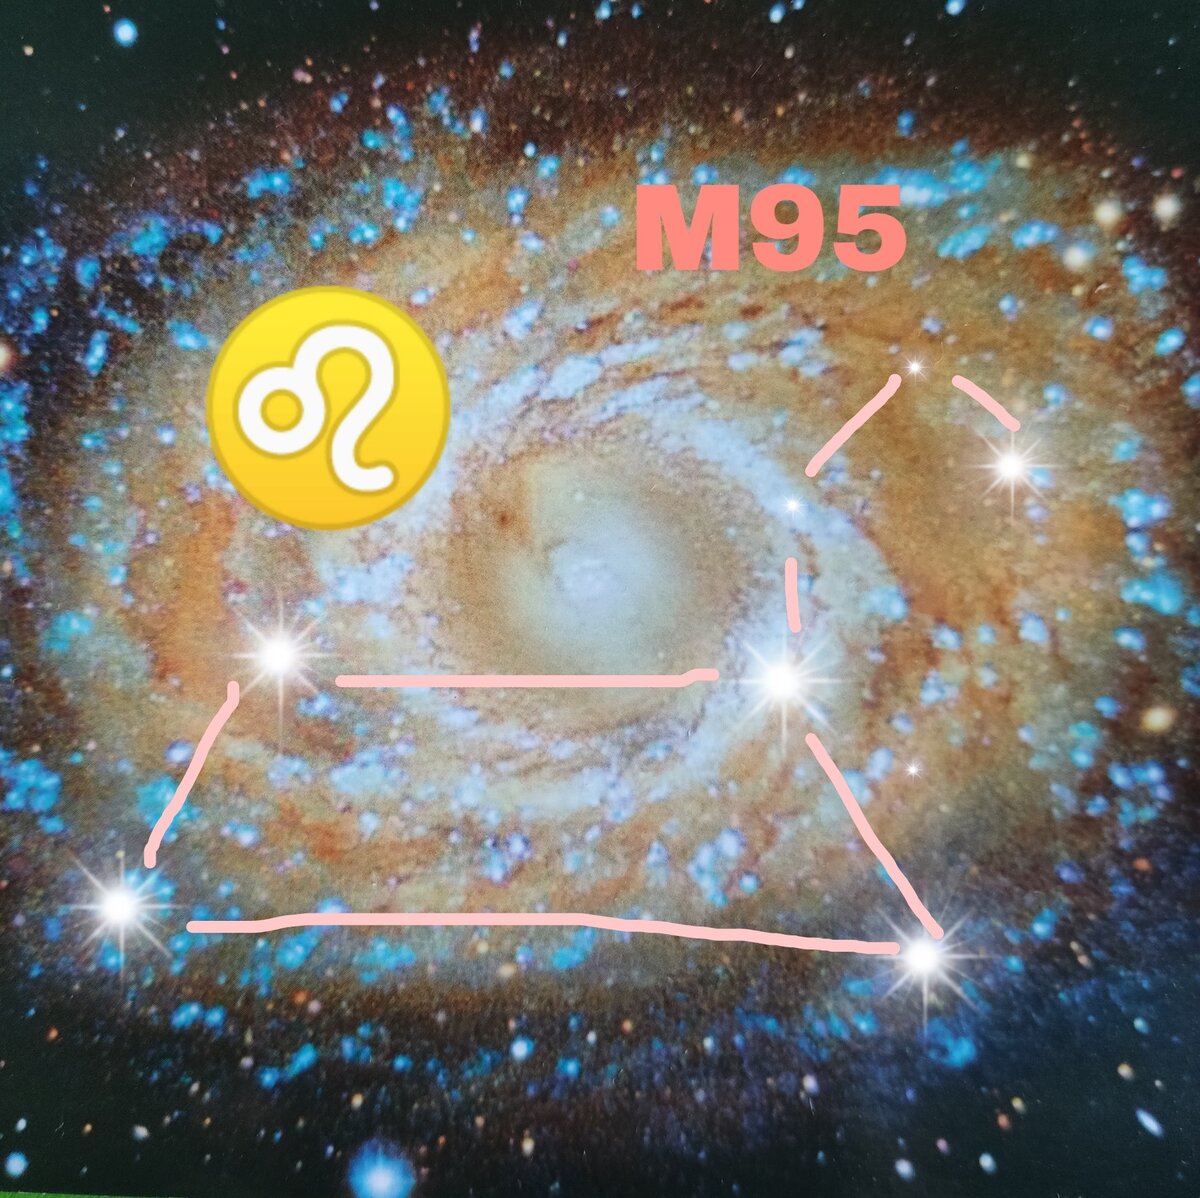 Спиральная  галактика  M95  в  созвездии Льва.